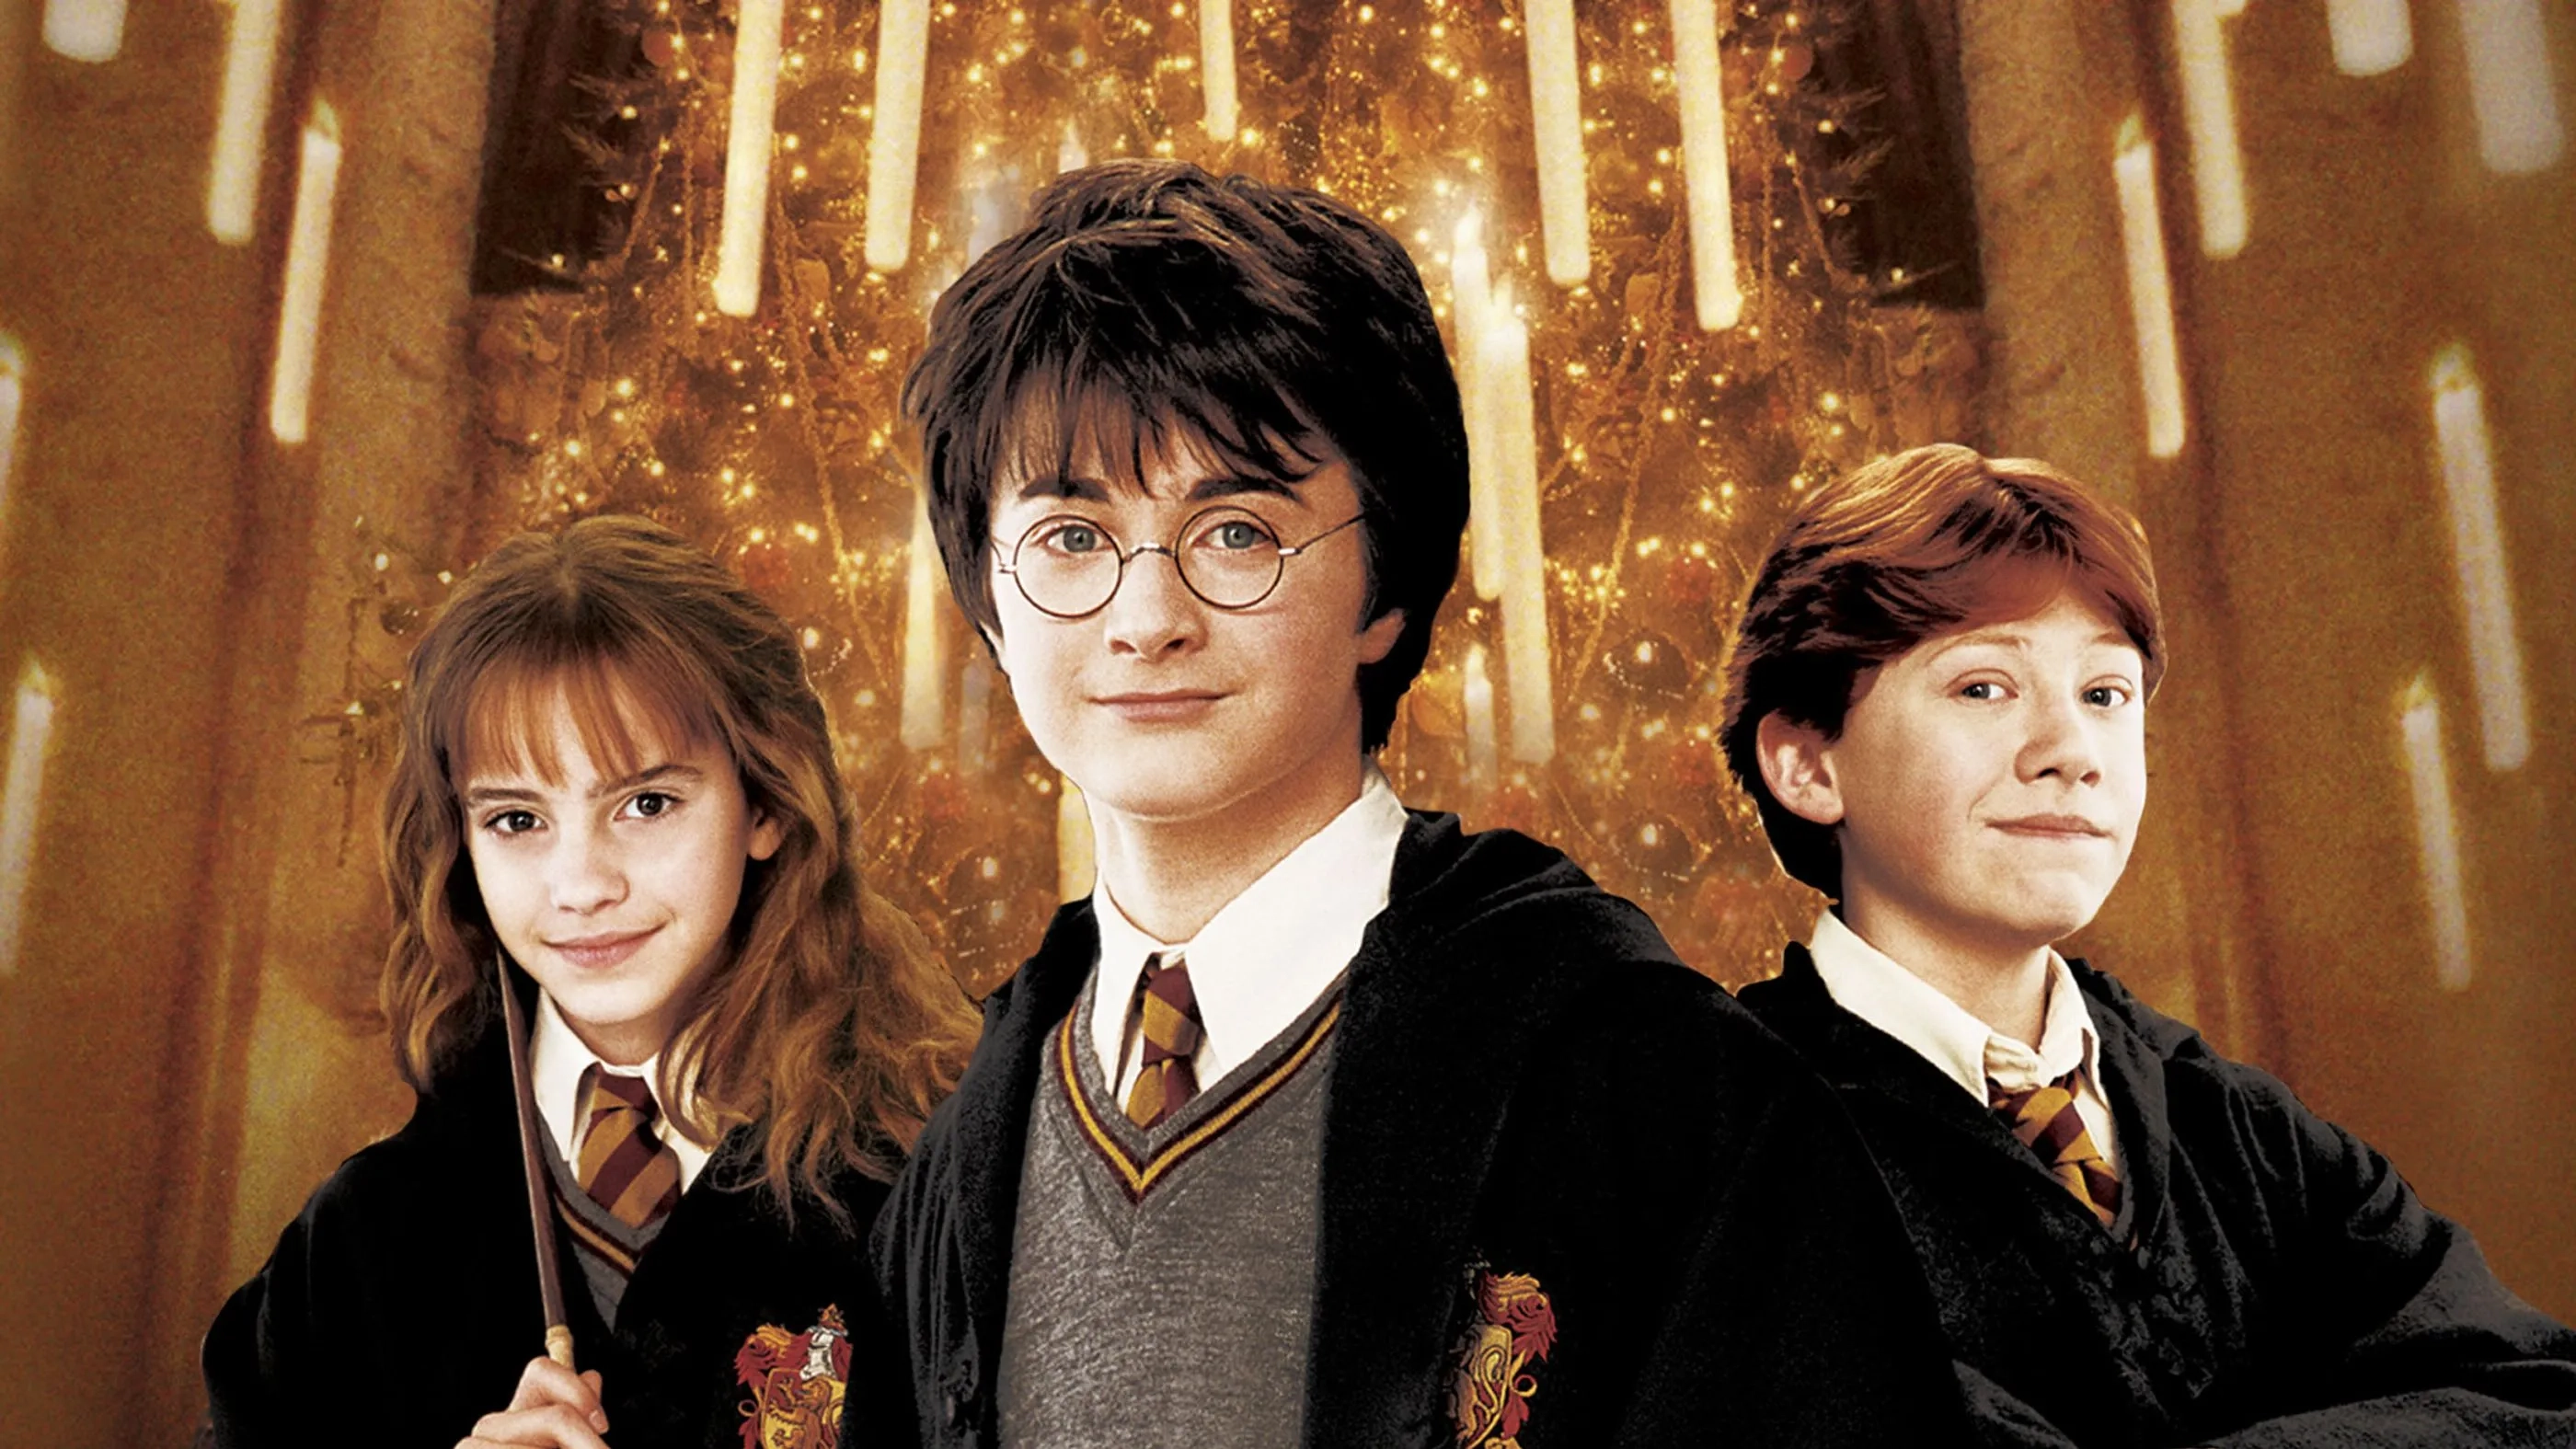 فیلم هری پاتر و تالار اسرار (Harry Potter and the Chamber of Secrets 2002)